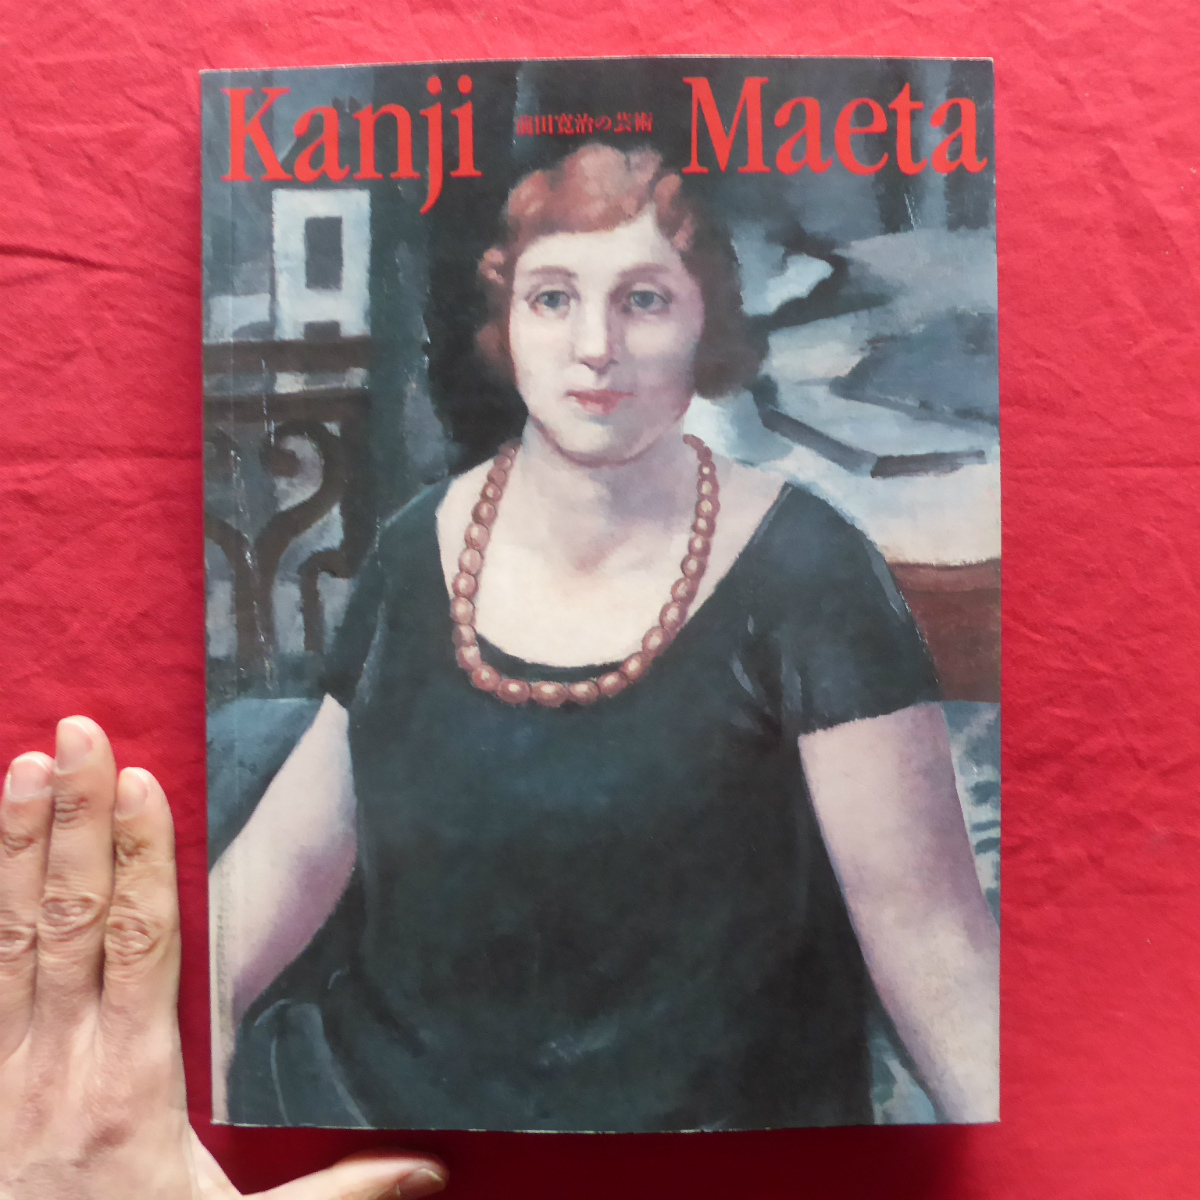 Catálogo i3 [Exposición de arte de Maeda Kanji - Poesía y forma/1999] Maeda Kanji y el mundo del arte francés a principios de la década de 1920/Maeda Kanji y la Asociación 1930, Cuadro, Libro de arte, Recopilación, Catalogar